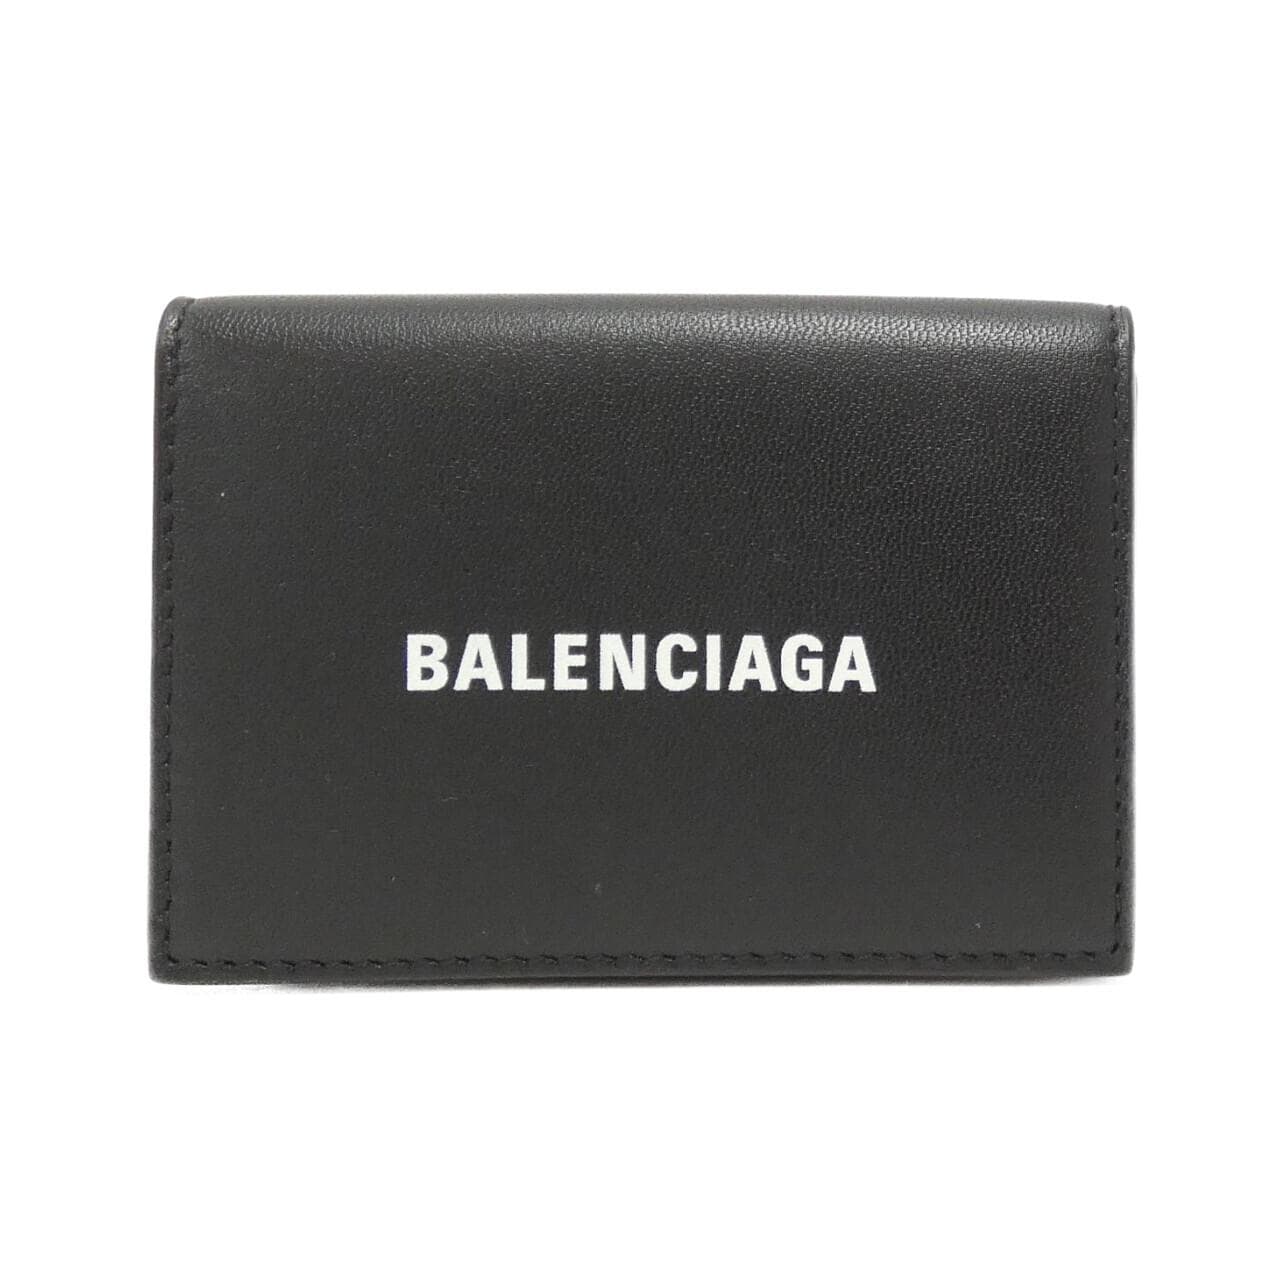 [BRAND NEW] BALENCIAGA Cash Mini Wallet 594312 1I353 Wallet